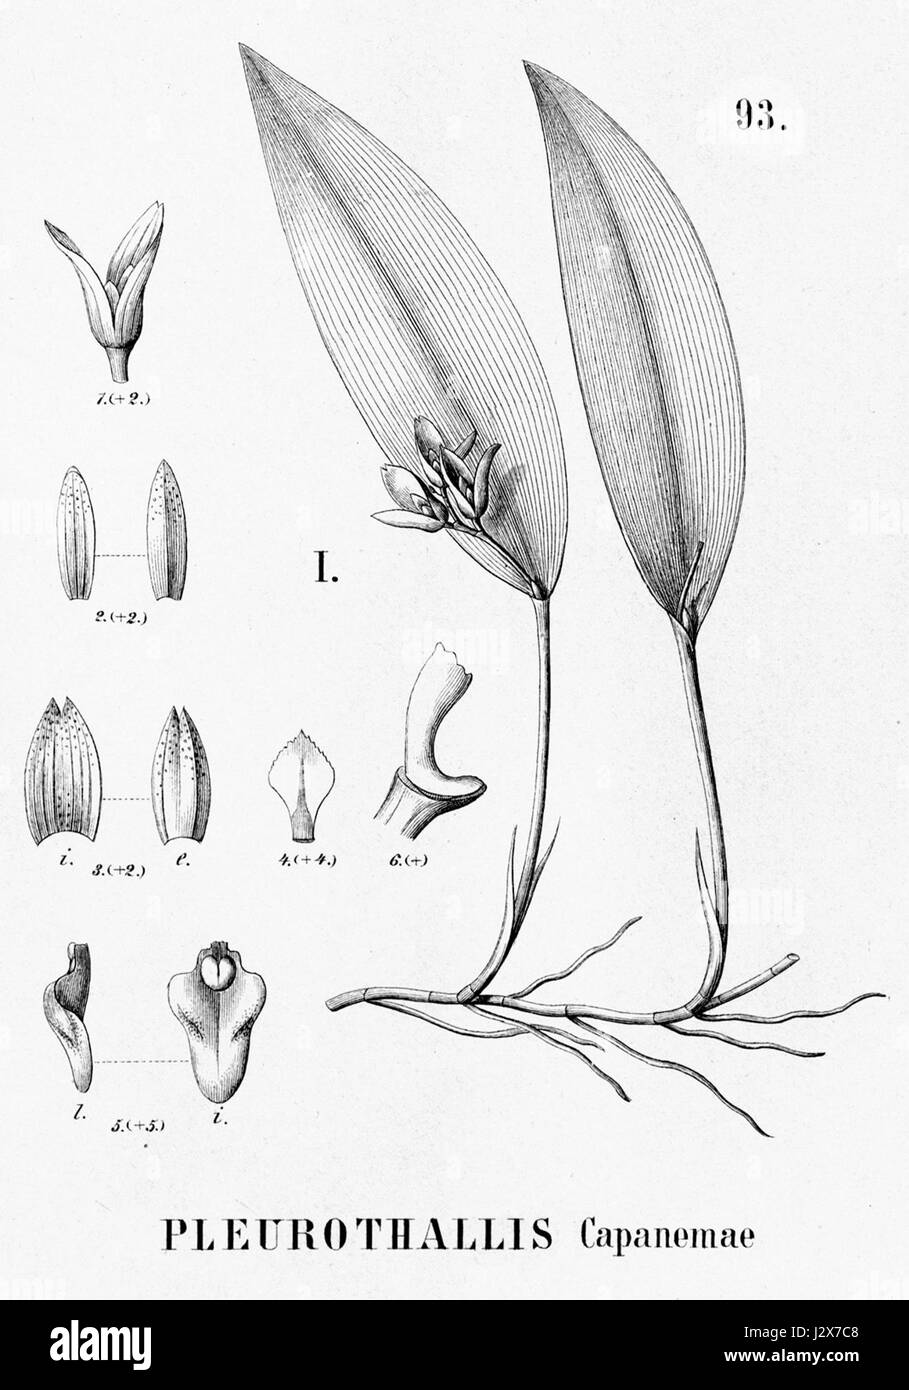 Acianthera capanemae (as Pleurothallis capanemae) - cutout from Flora Brasiliensis 3-4-93 fig I Stock Photo